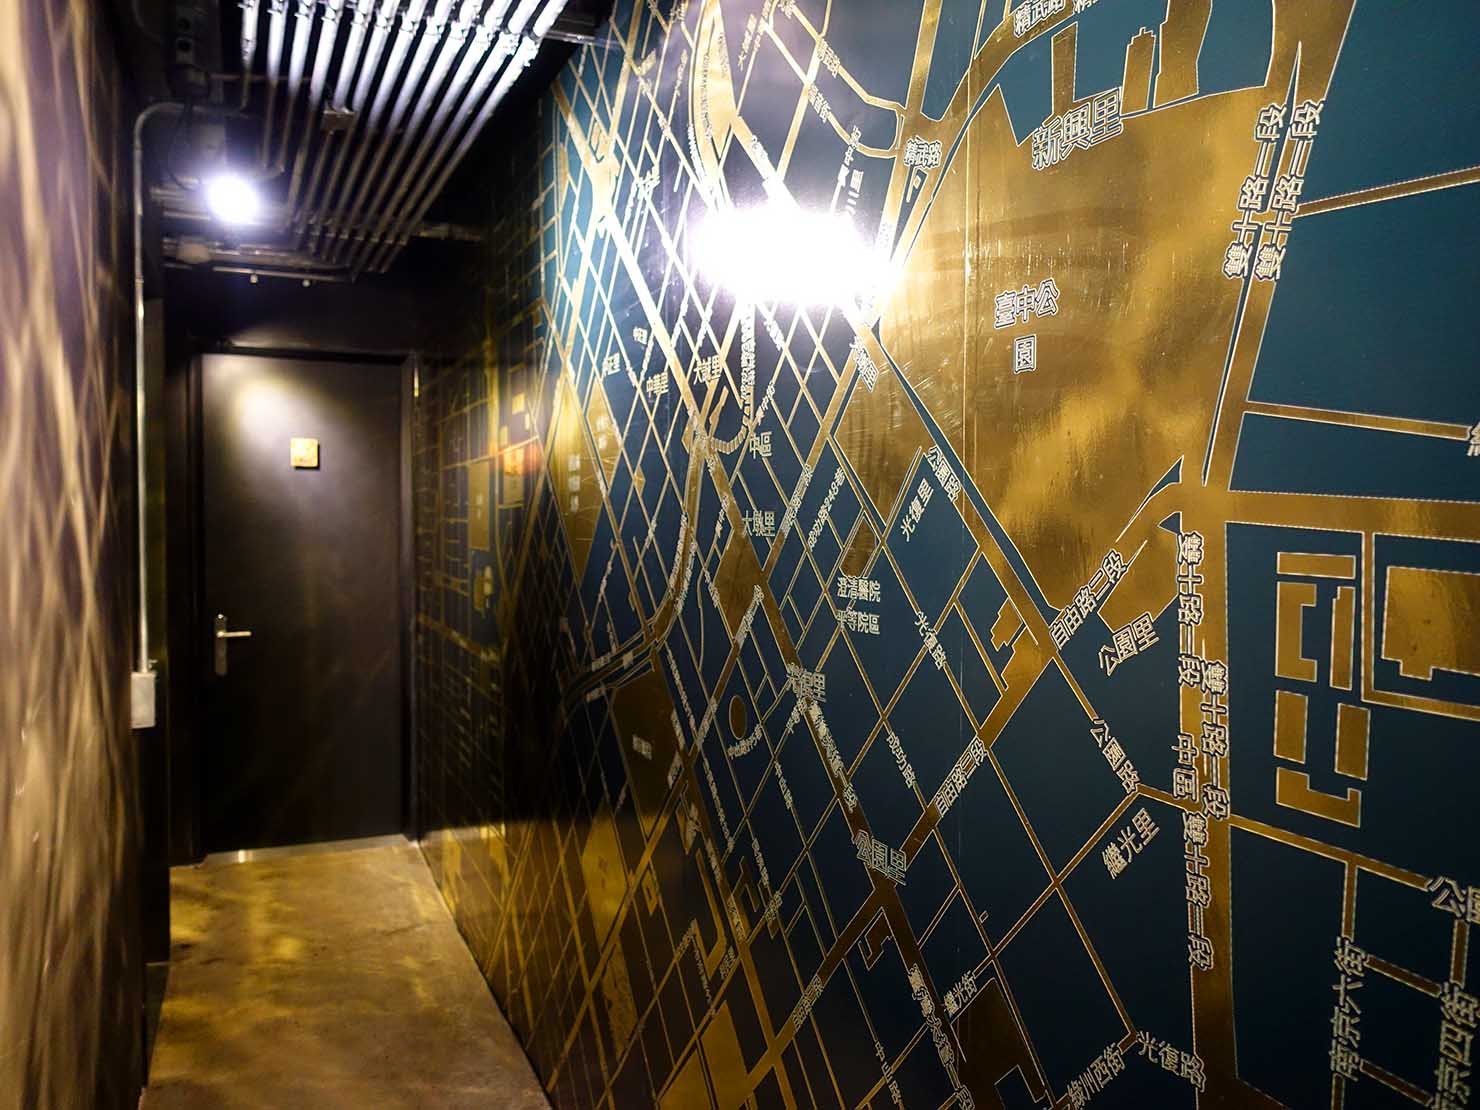 台中駅徒歩10分のリーズナブルなおすすめミニホテル「光原宿 Light House」の宿泊フロアに飾られた金色の地図